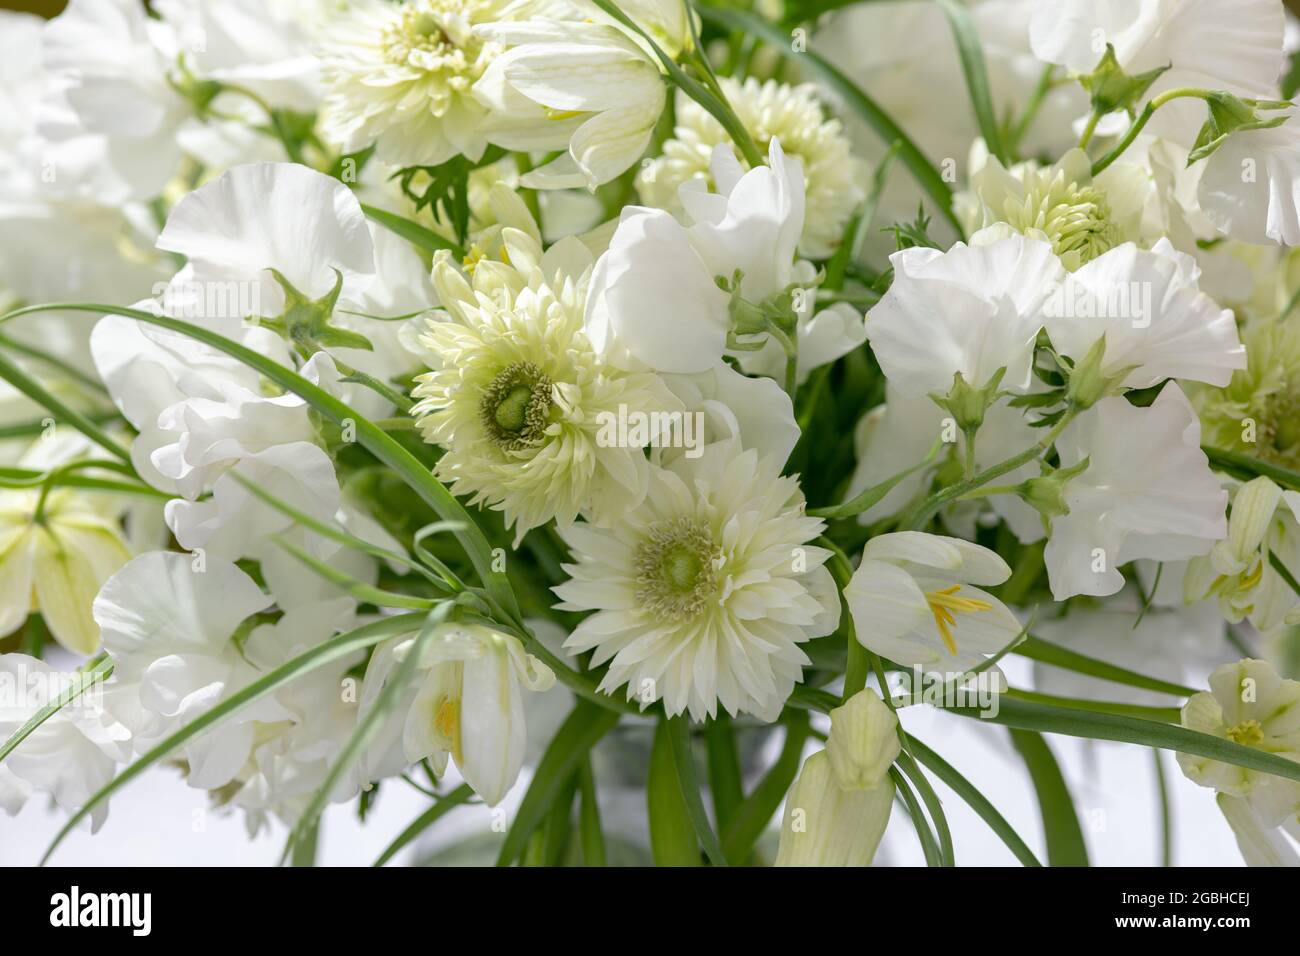 botanik, runder Blumenstrauß in weiß, Anemone coronaria, Fritillaria alba, ZUR GRUSSKARTE/POSTKARTENVERWENDUNG IN KEIMREDE.C ES KÖNNEN BESTIMMTE EINSCHRÄNKUNGEN GELTEN Stockfoto